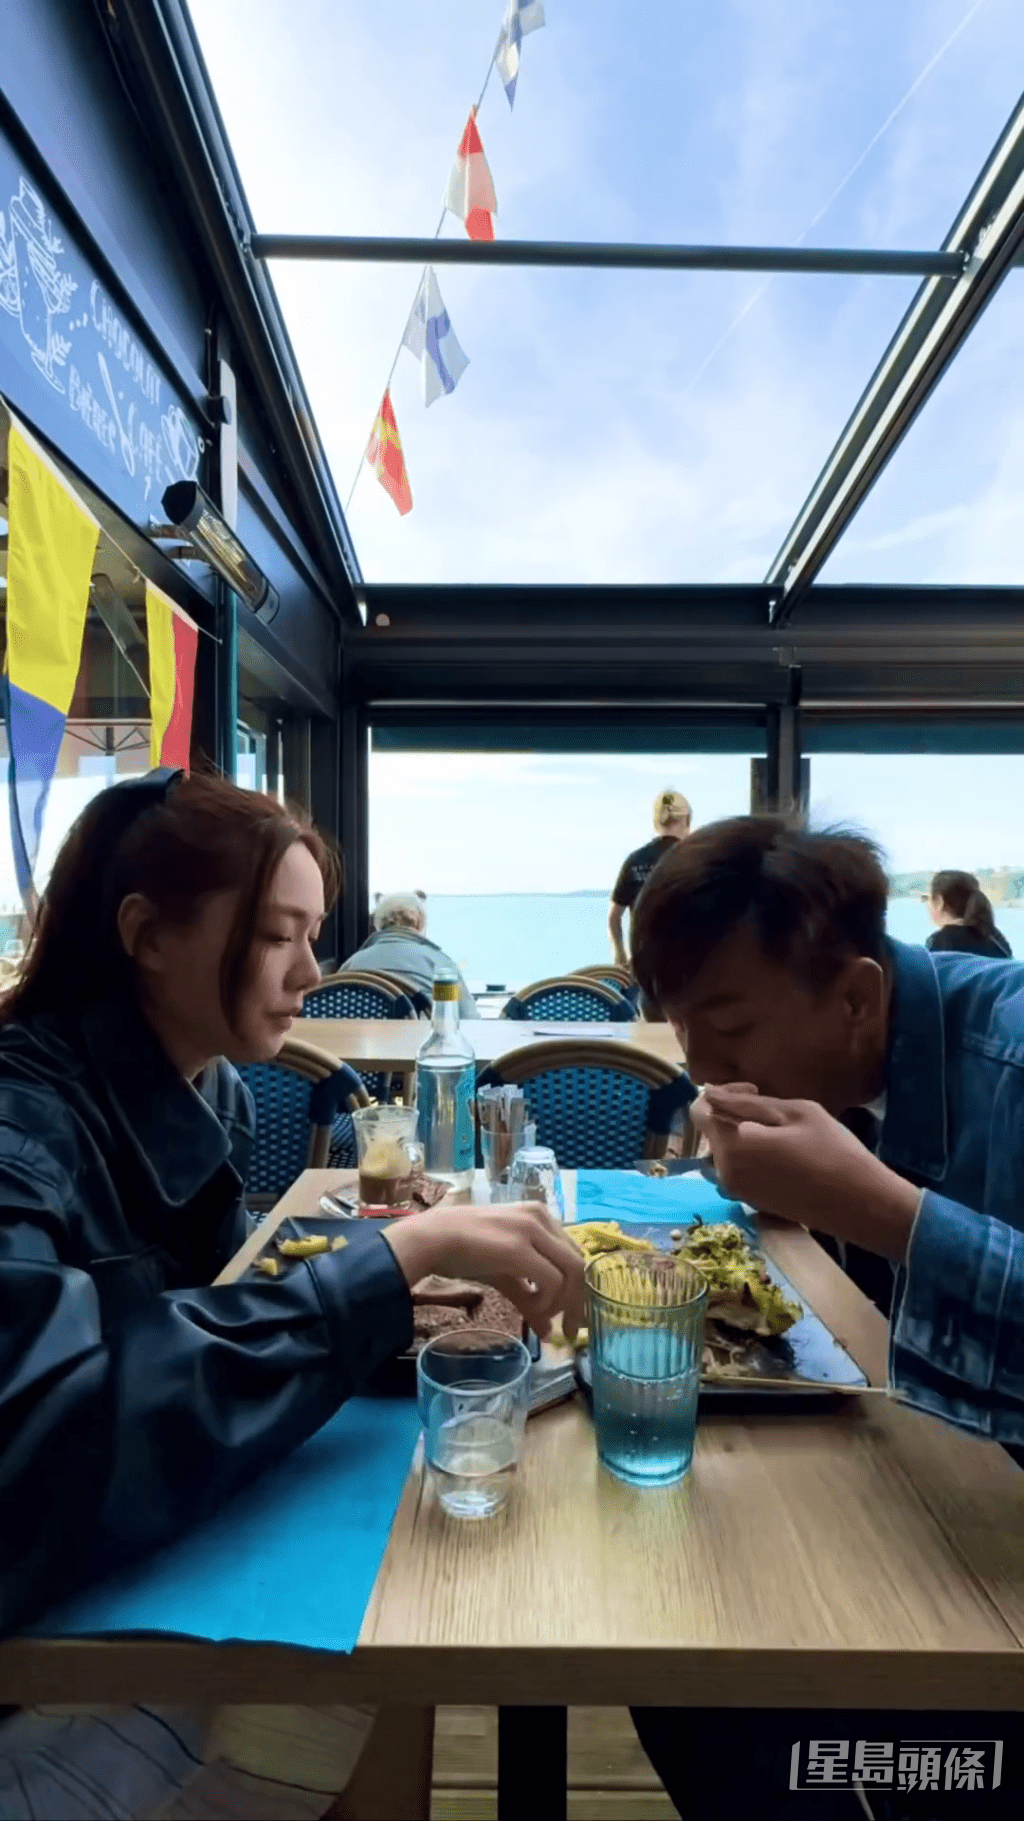 兩人在餐廳同框用膳的影片被兩倍速播放。